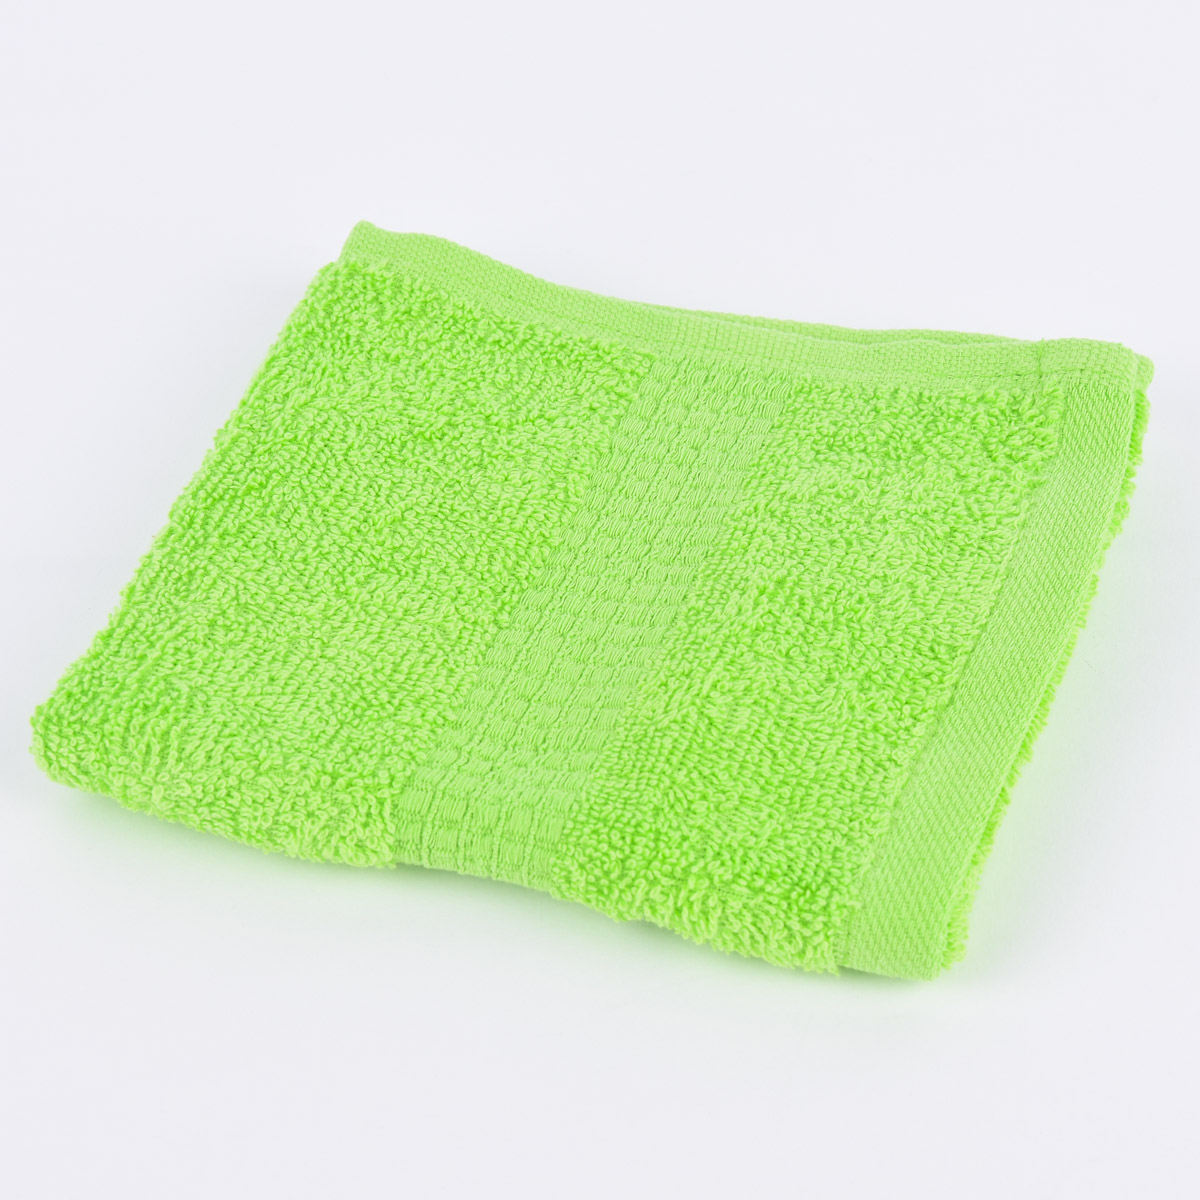 Handtuch grün 100% 500g/qm Baumwolle Qualitätsfrottee